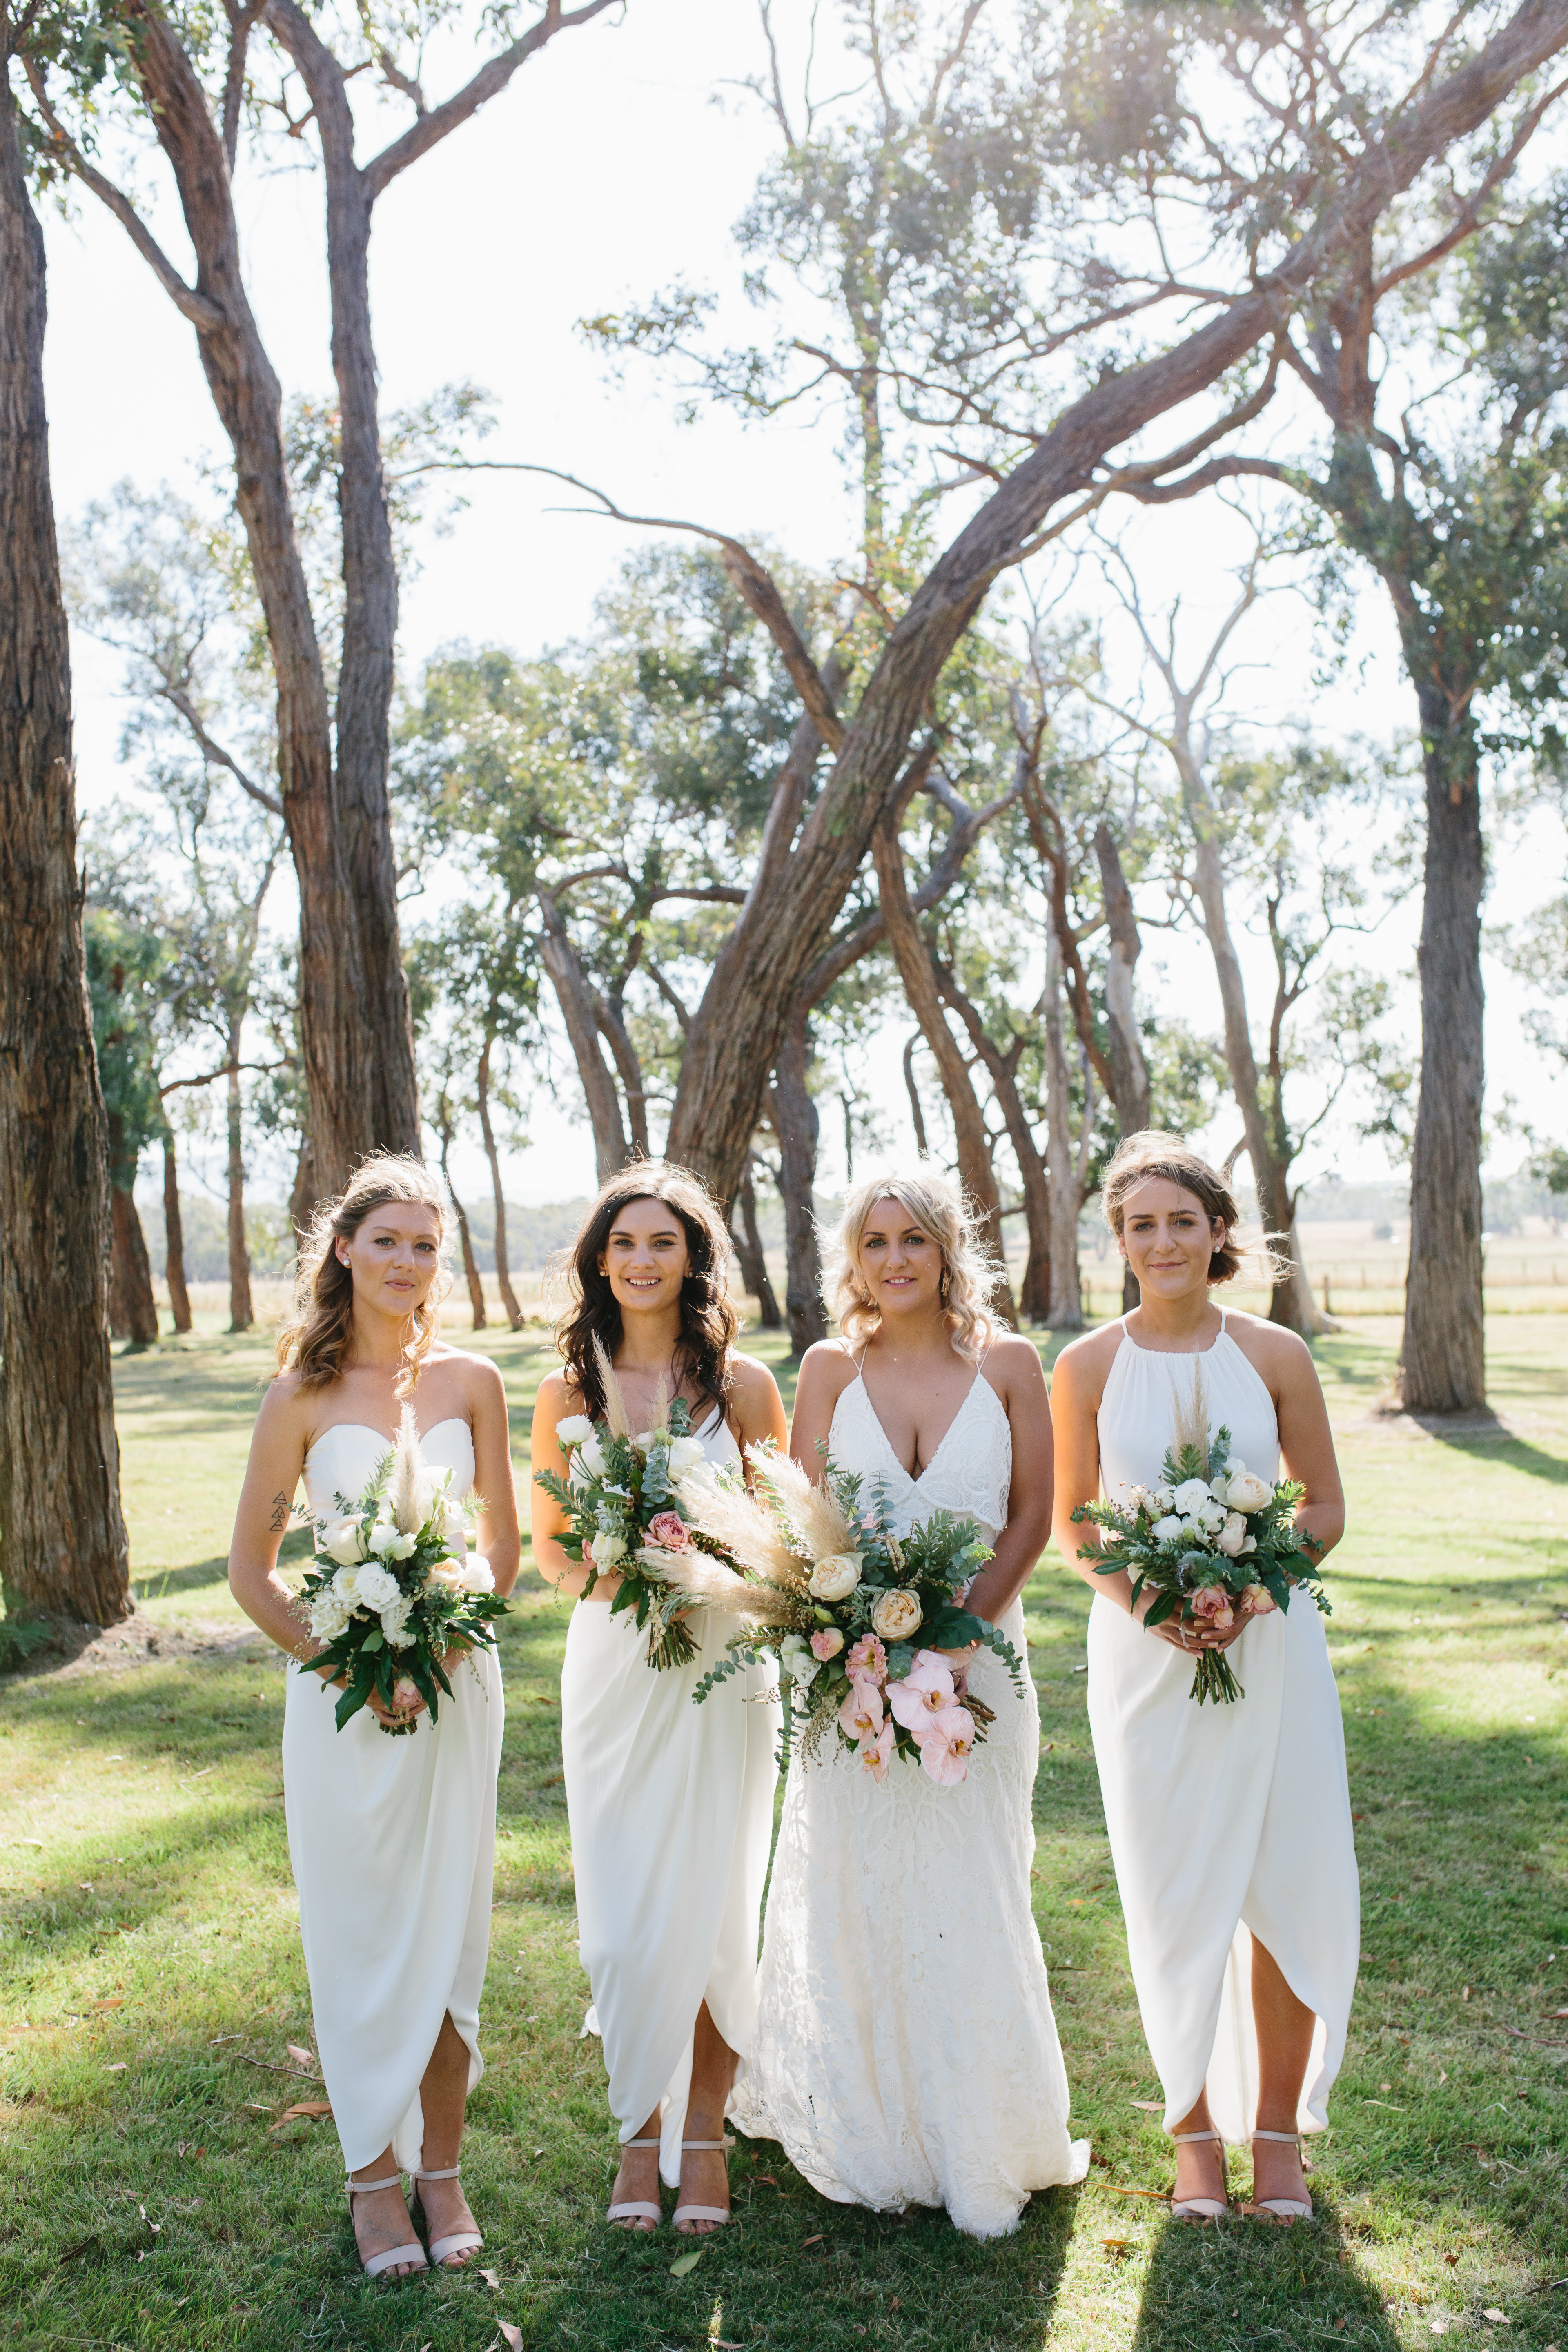 White bridesmaid dresses